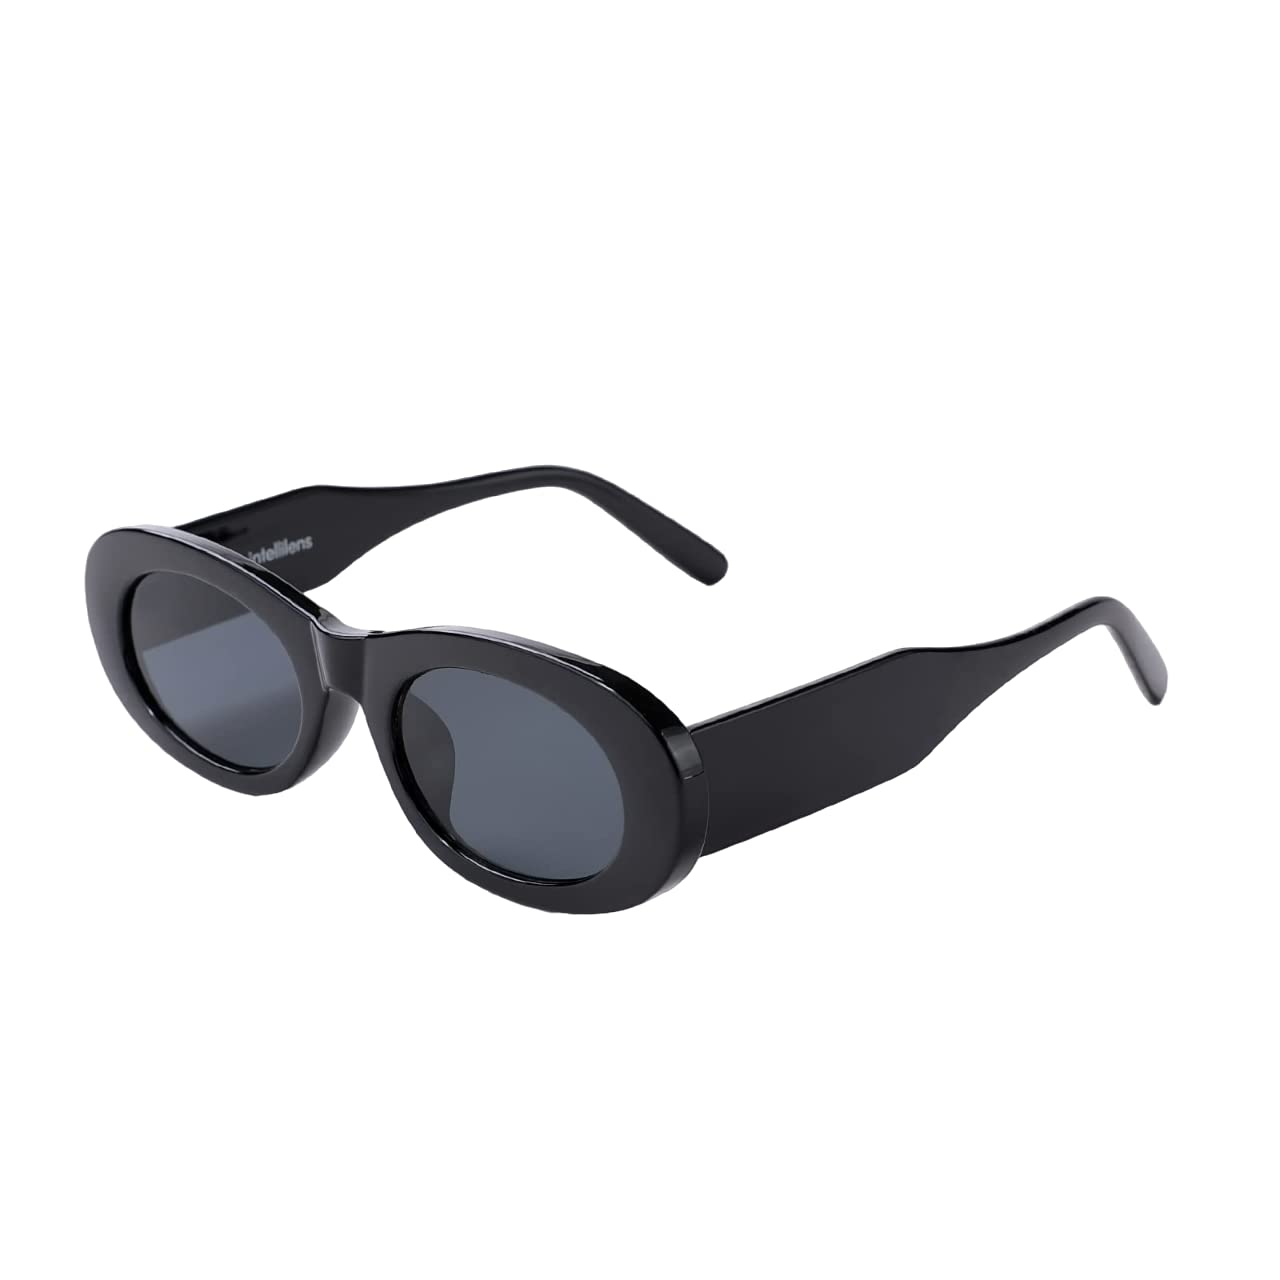 Intellilens Rectangular UV Protection Sunglasses For Women - KENDALL JENNER Sunglasses | Goggles for Women (Black) 65-18-142